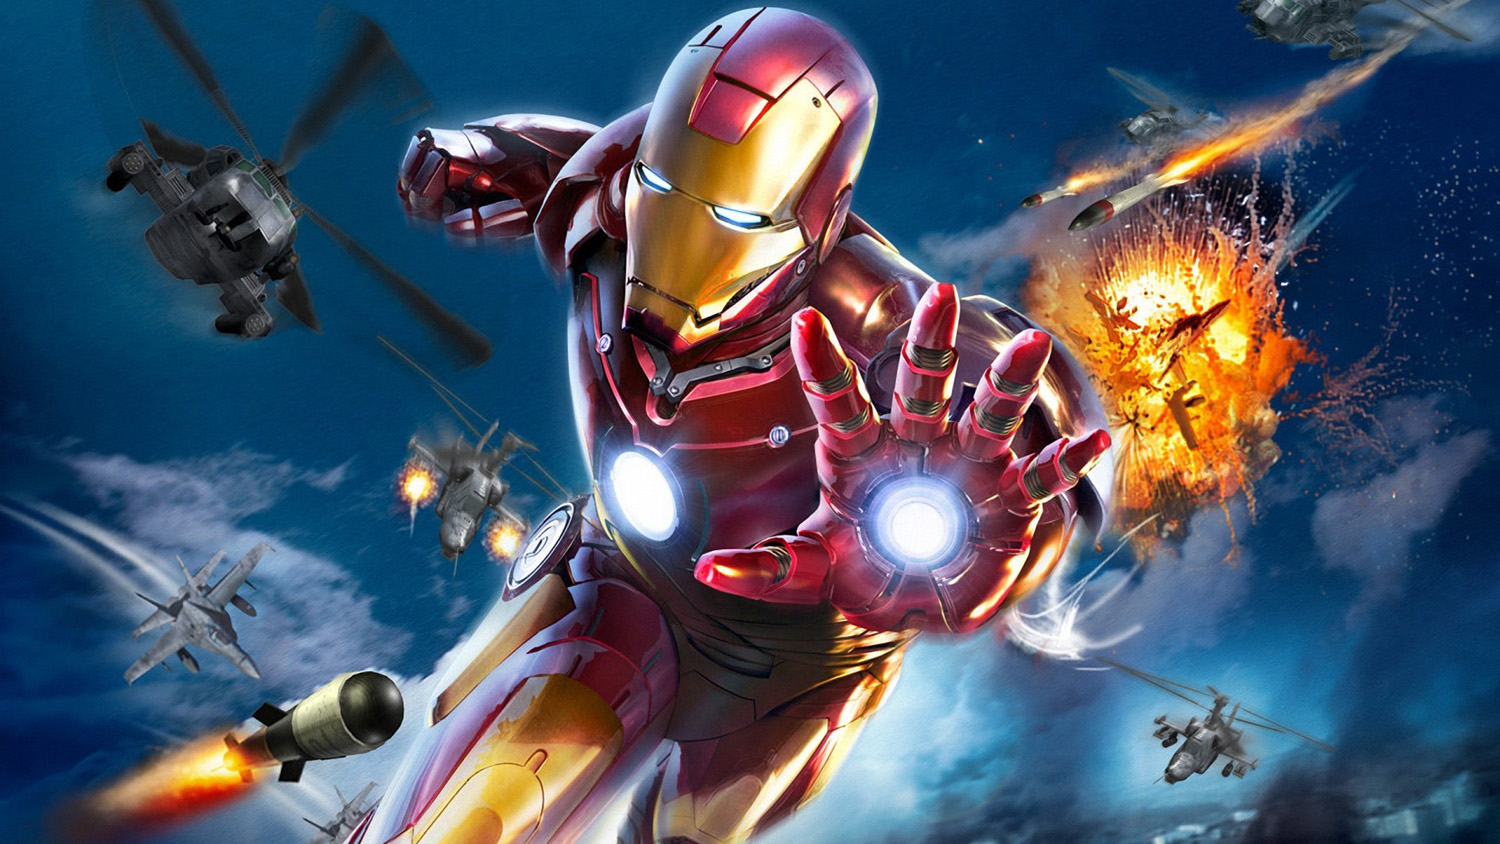 Poster A4 Dán Tường Marvel, Decal 21X30 Trang Trí Có Keo Iron Man - Mẫu 1,  Nhận In Theo Yêu Cầu | Lazada.Vn